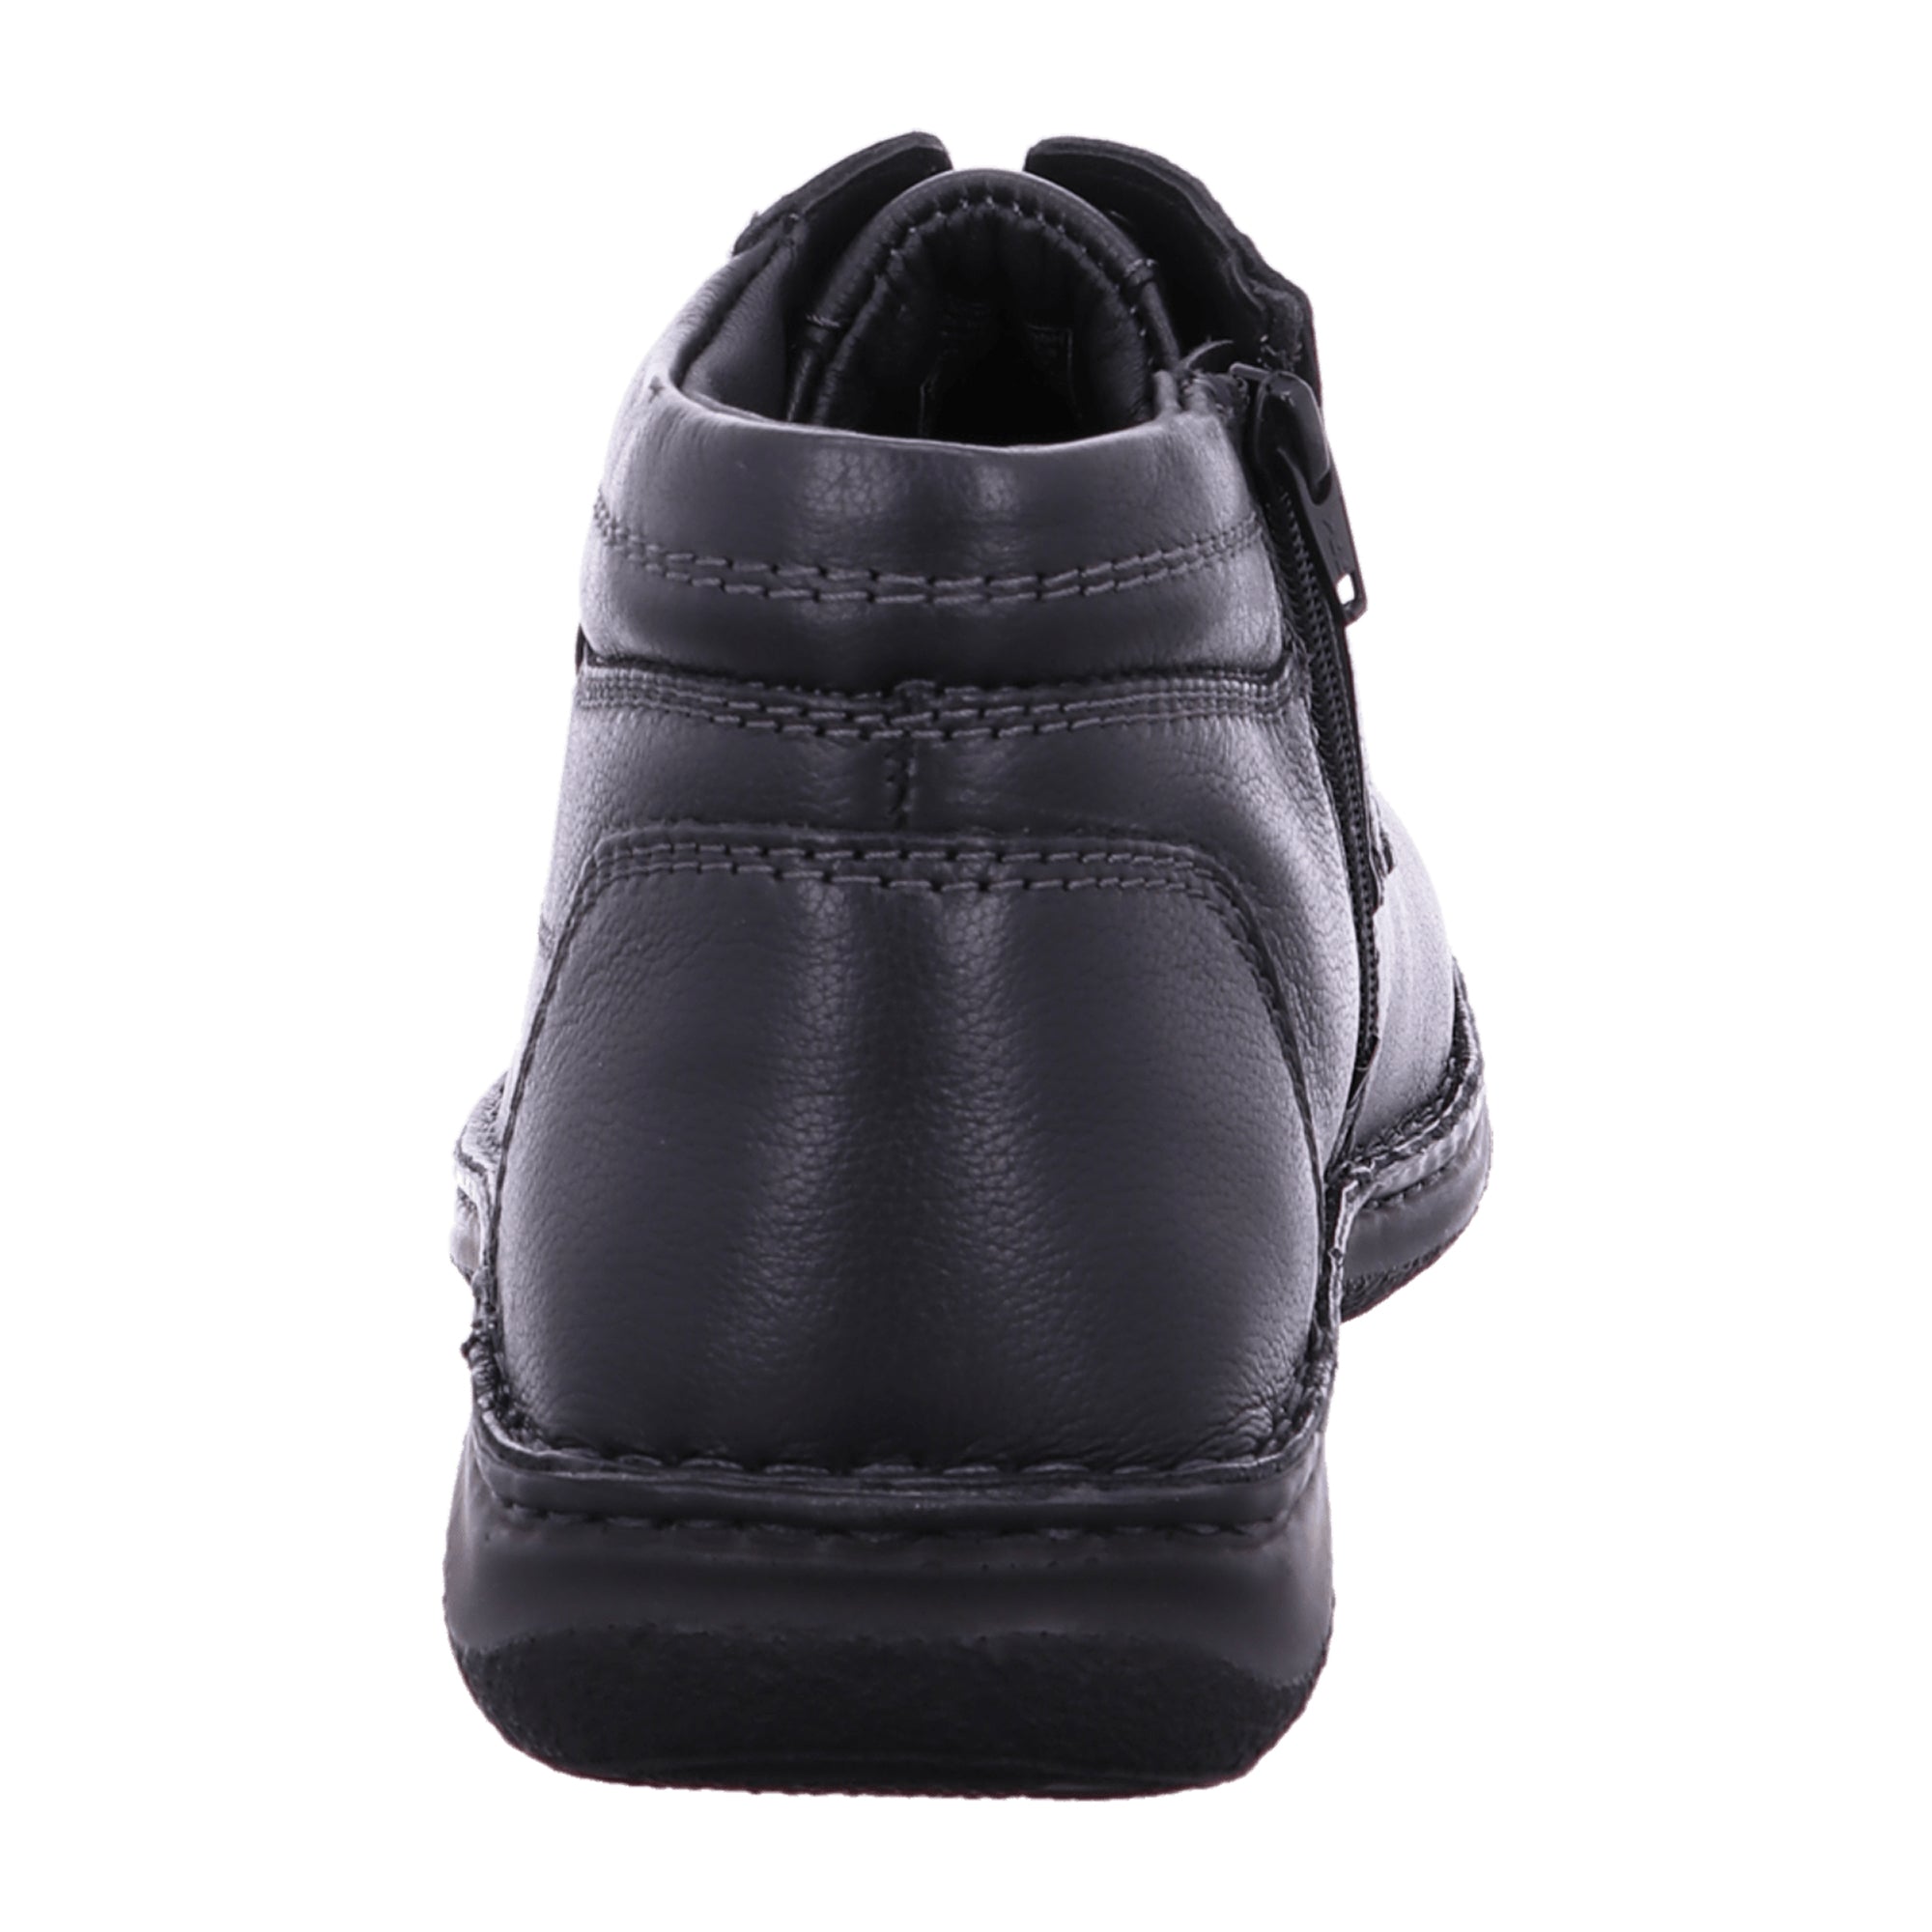 Josef Seibel ANVERS 35 Men's Shoes in Black